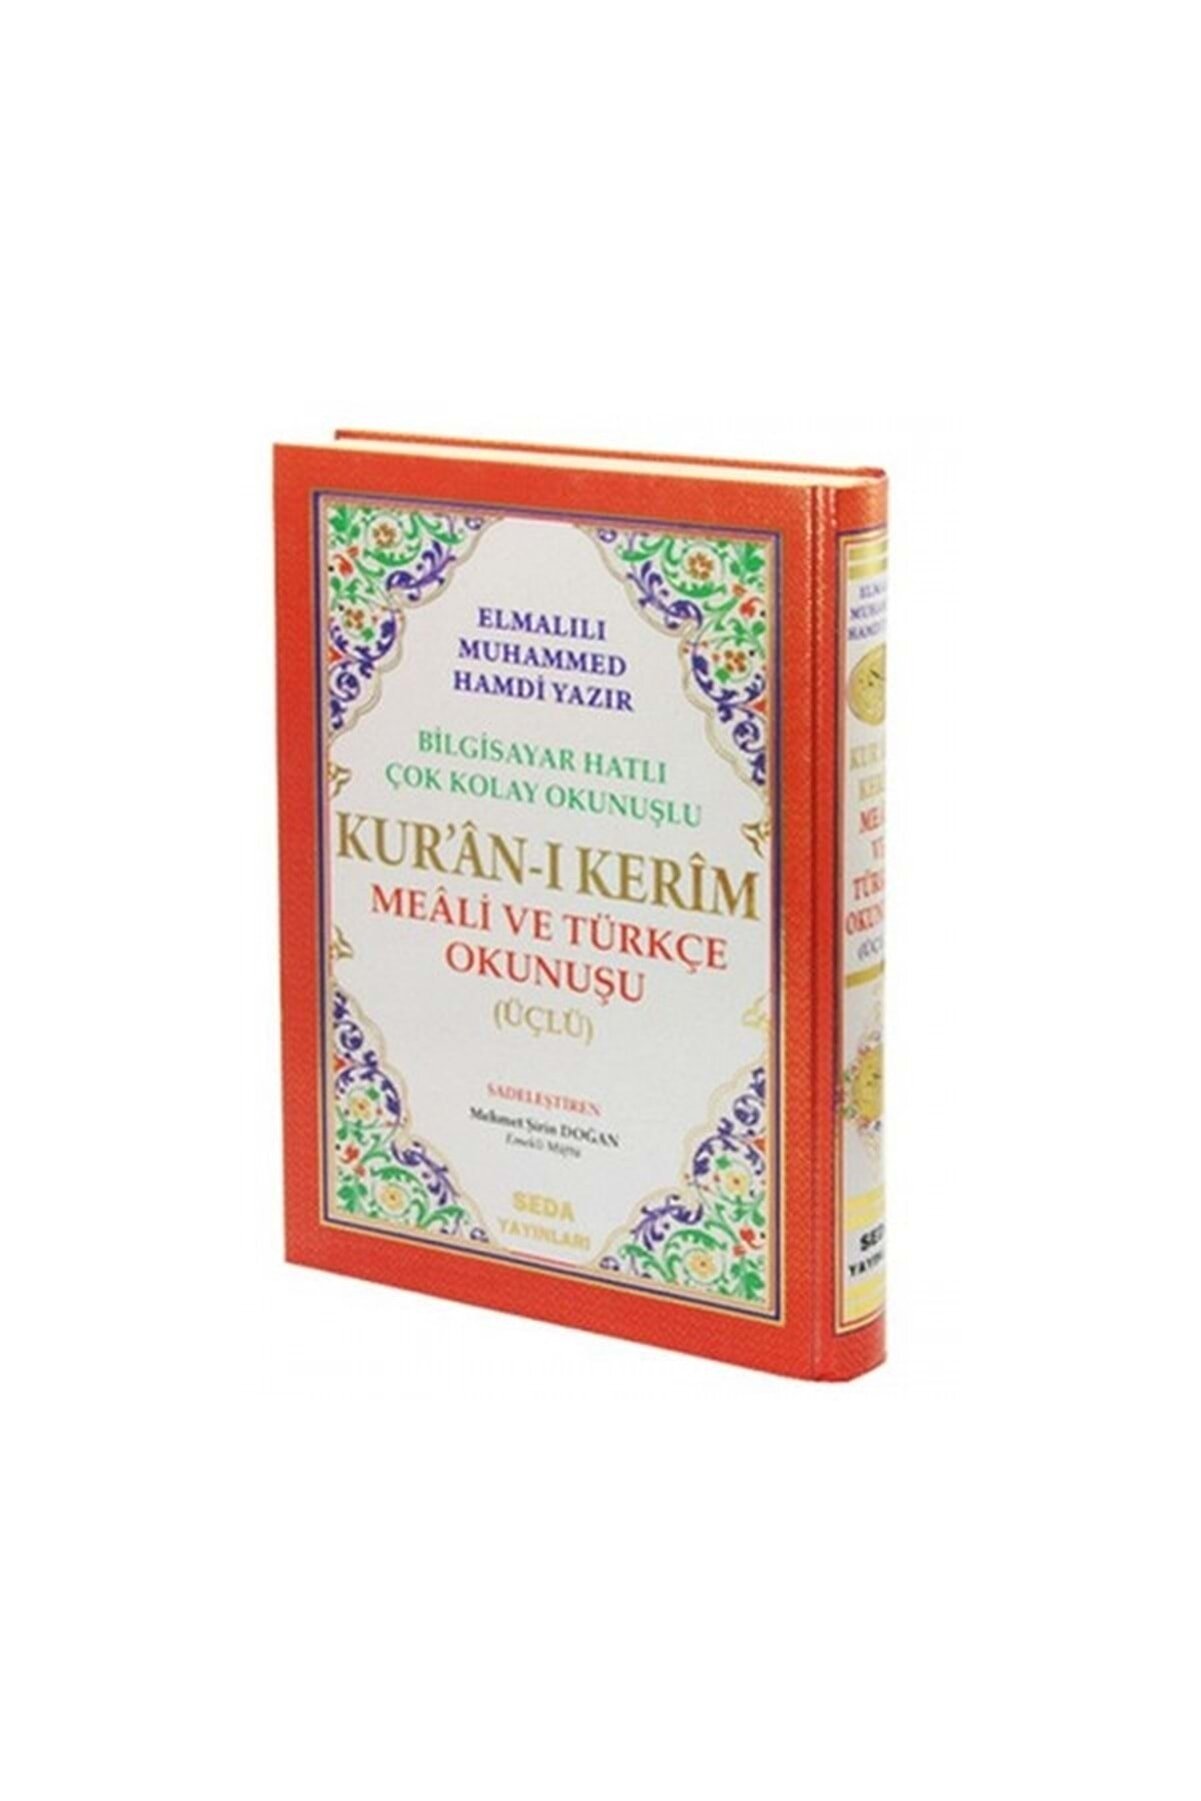 Seda Yayınları Kur'an-ı Kerim Rahle Boy Sade (2 RENKLİ SADE) / Üçlü Kur'an-ı Kerim Mealleri Kod:004